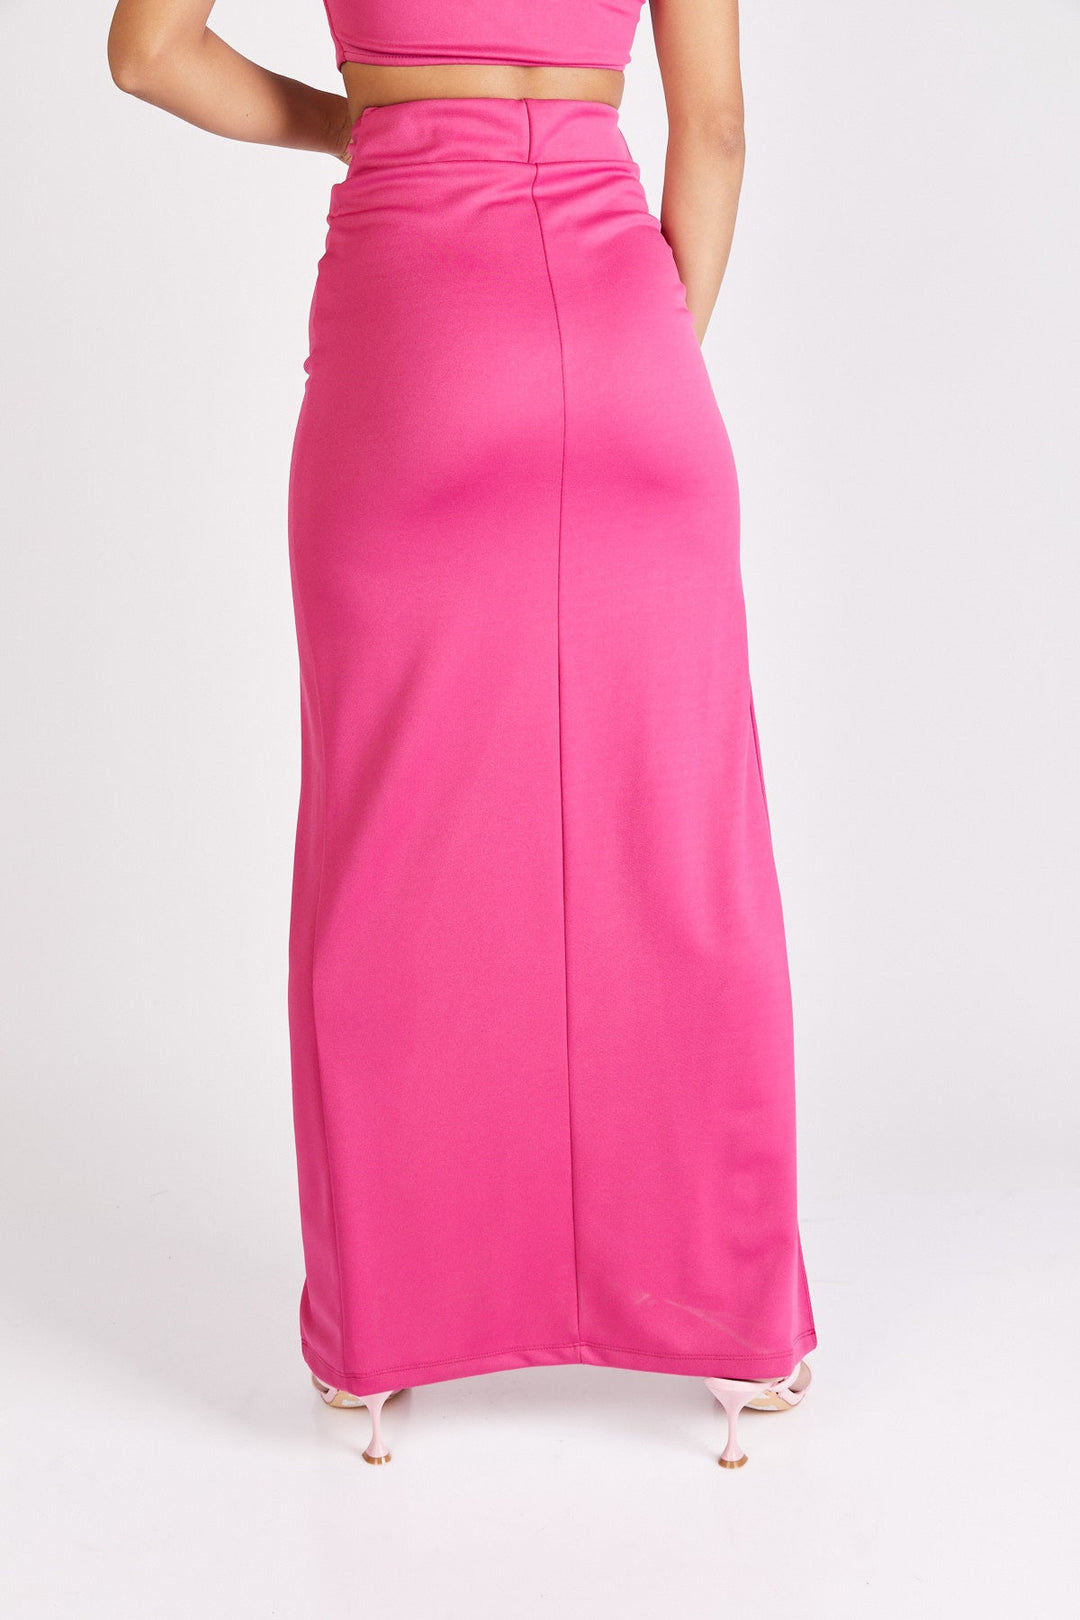 חצאית מקסי אדריאן בצבע ורוד פוקסיה - Neta Efrati